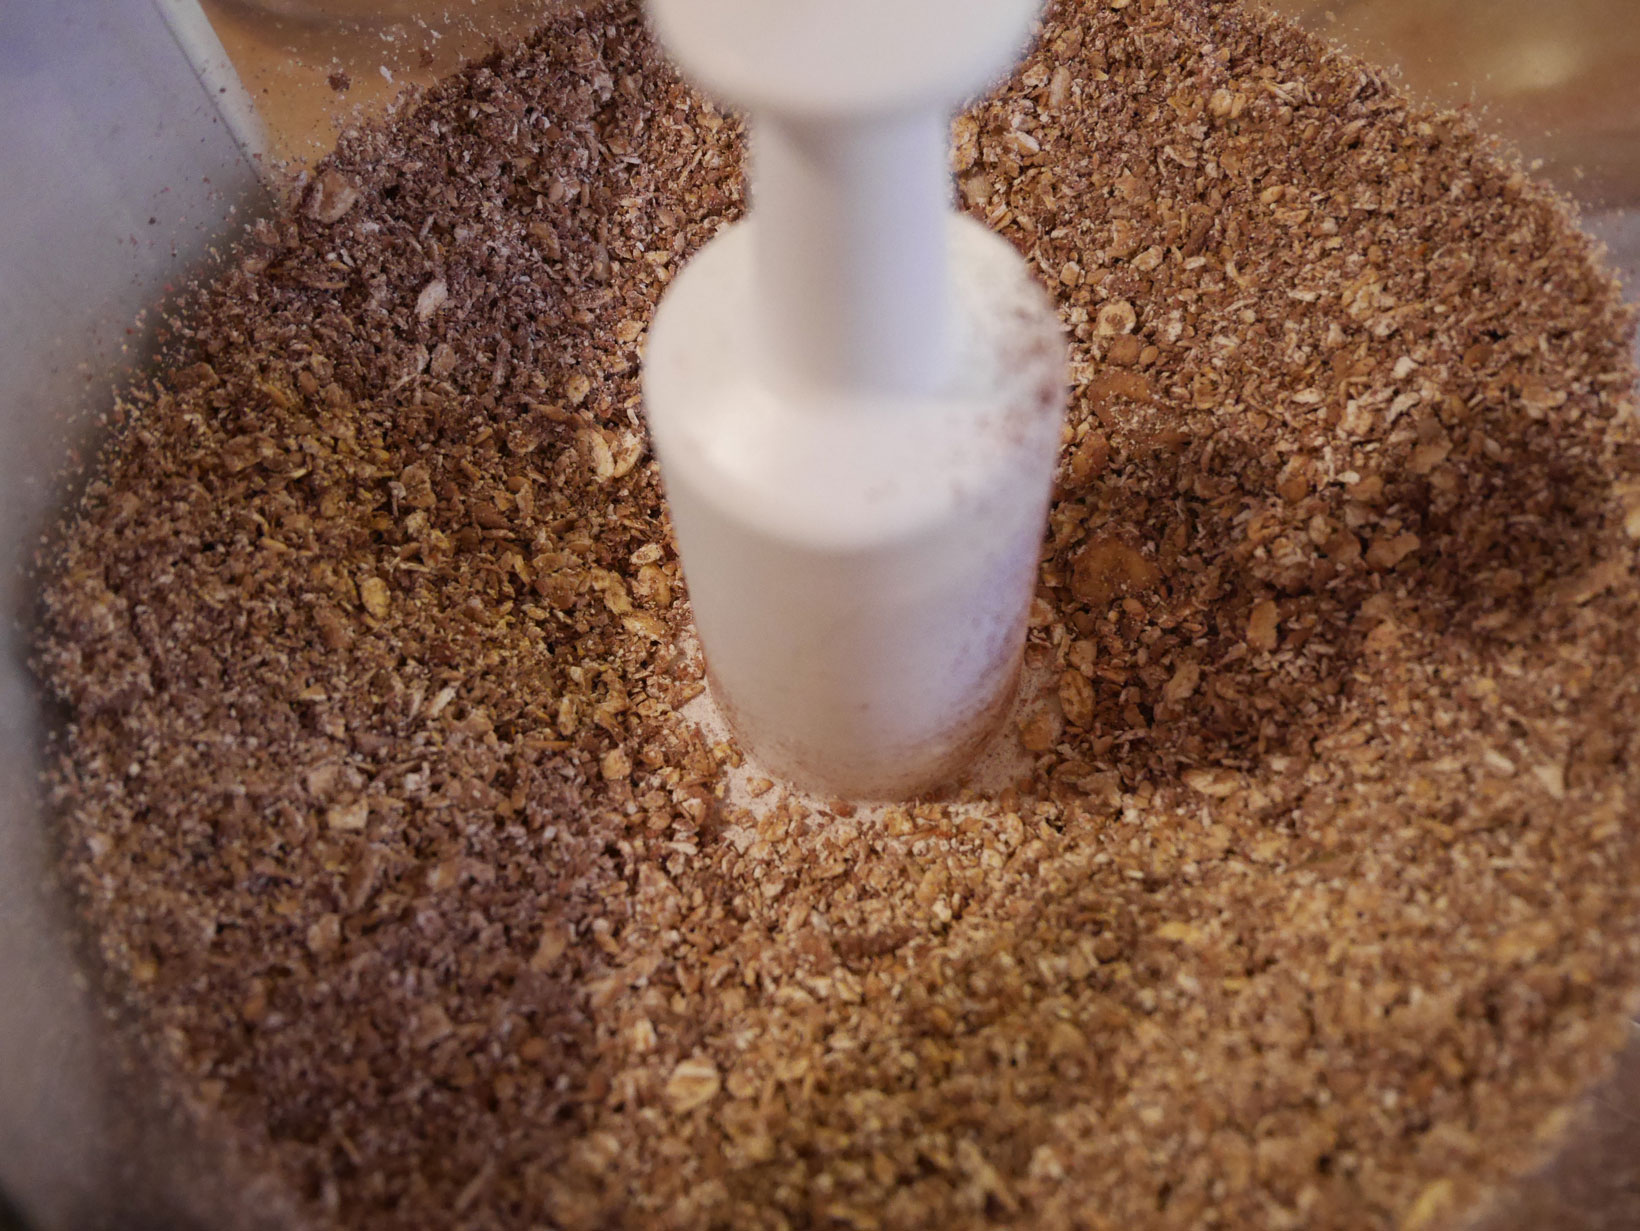 Att mixa granolan till grus är det lite roliga och knasiga momentet.